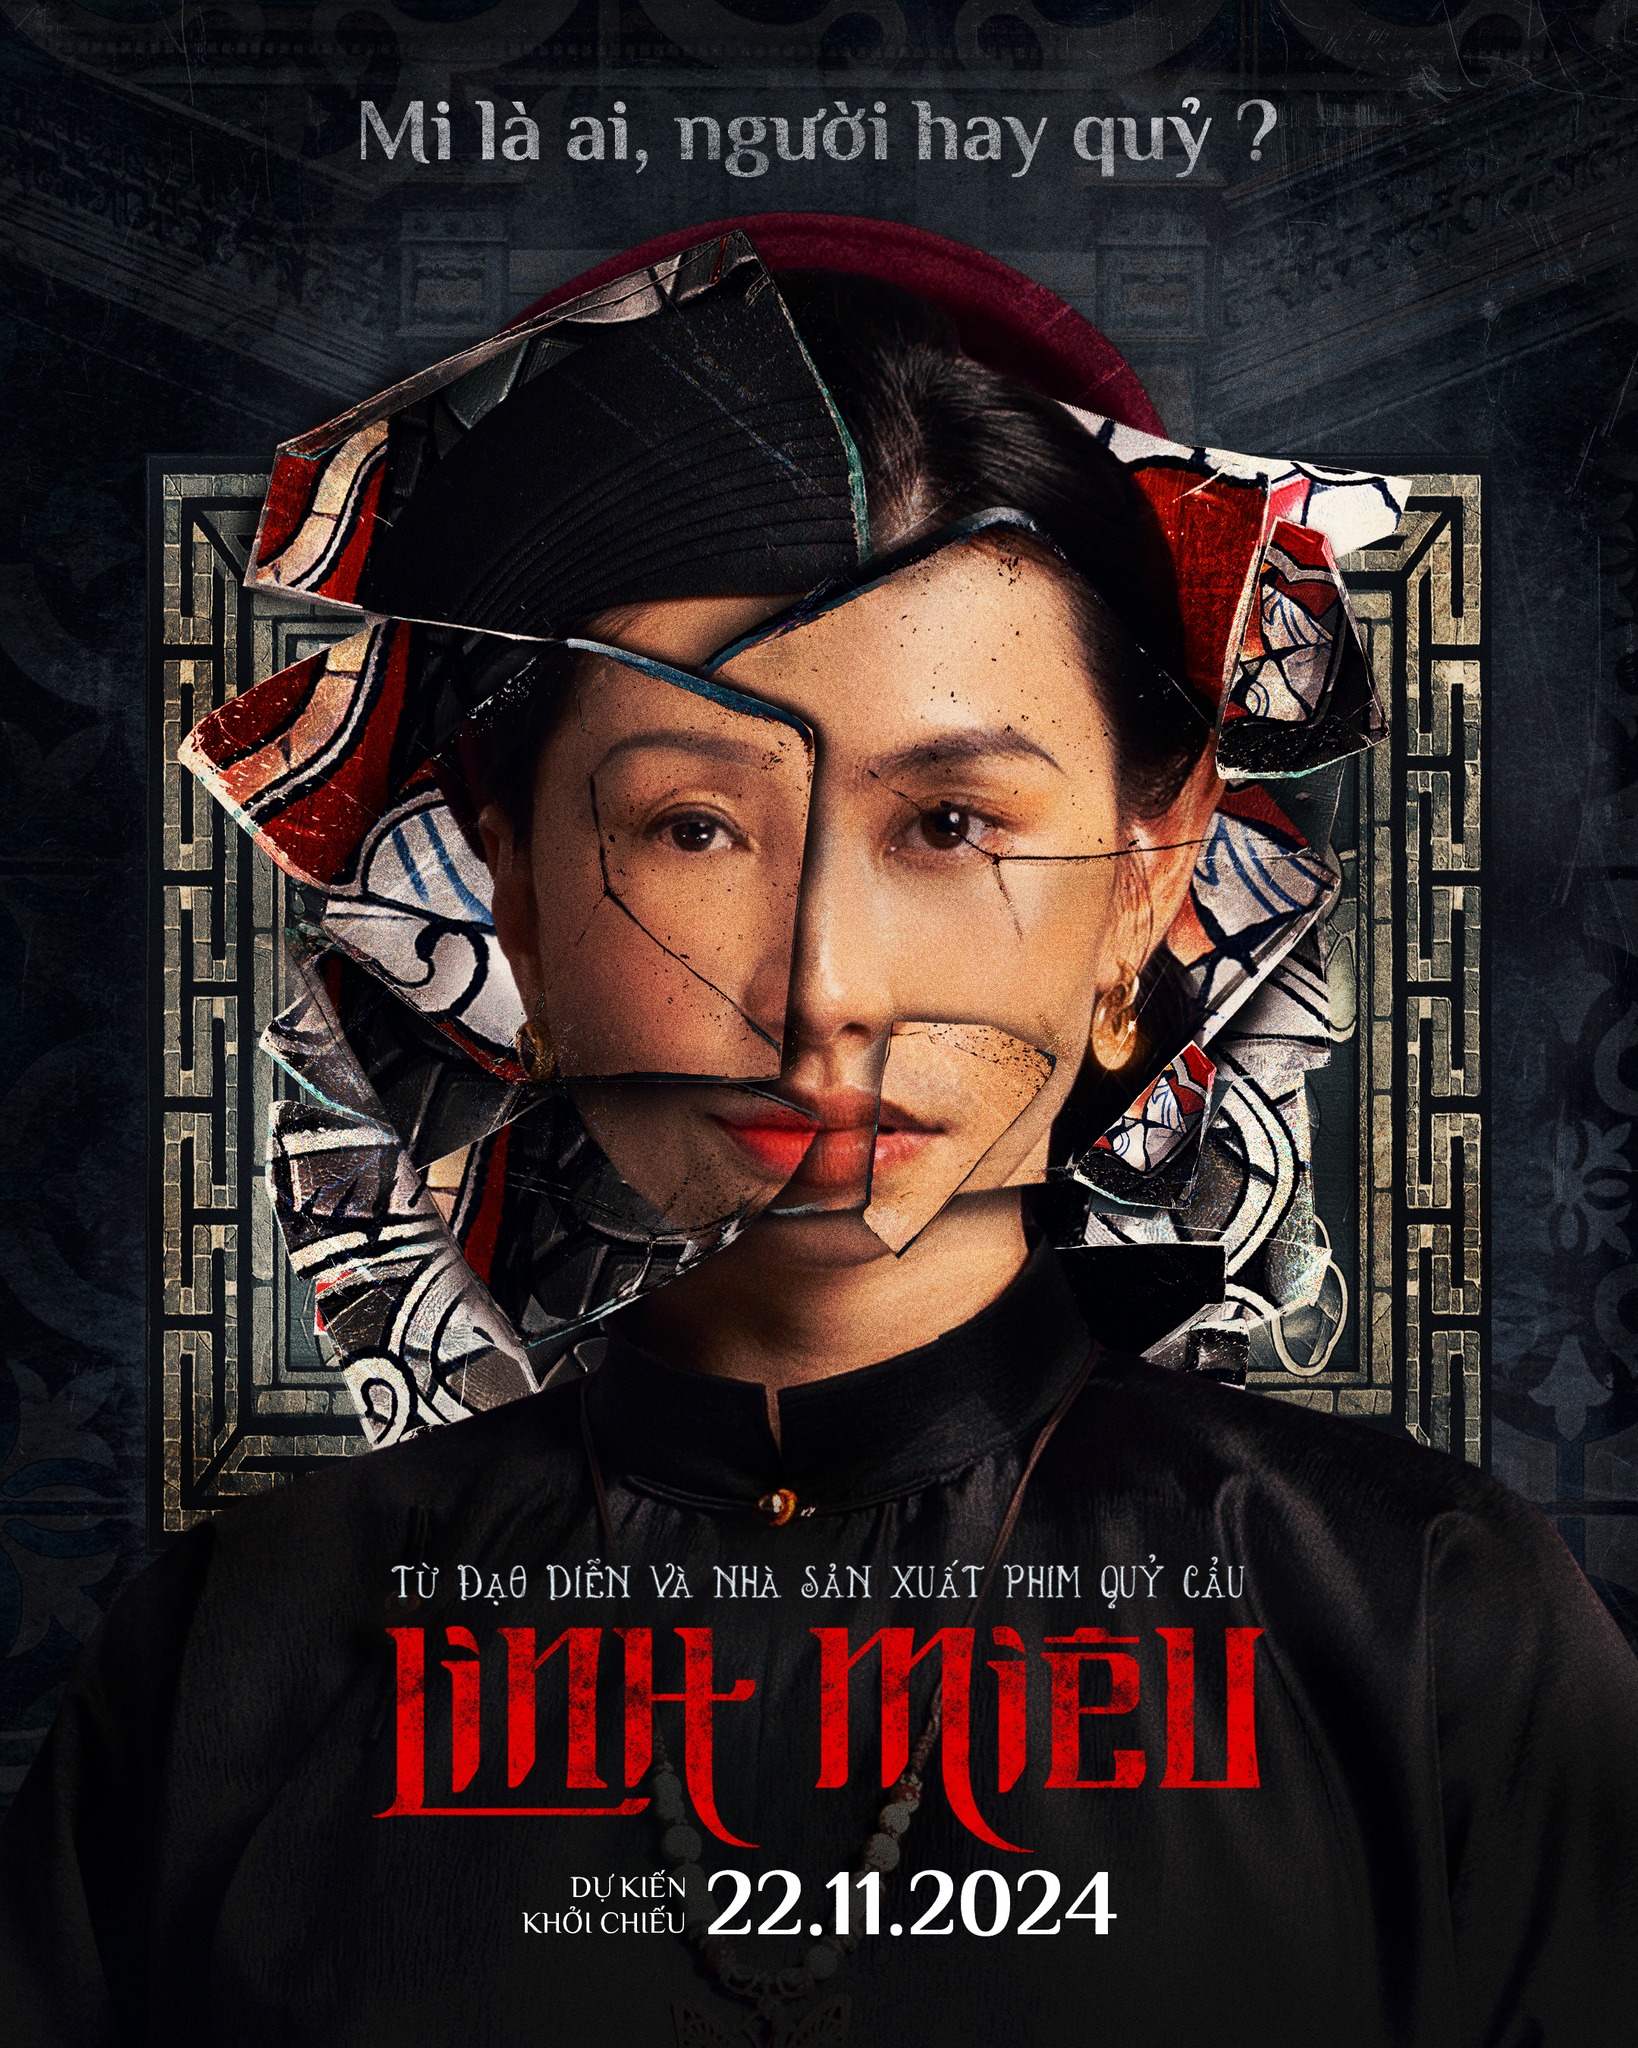 Thùy Tiên chính thức debut làm diễn viên, đóng chính phim kinh dị Linh Miêu - ảnh 1